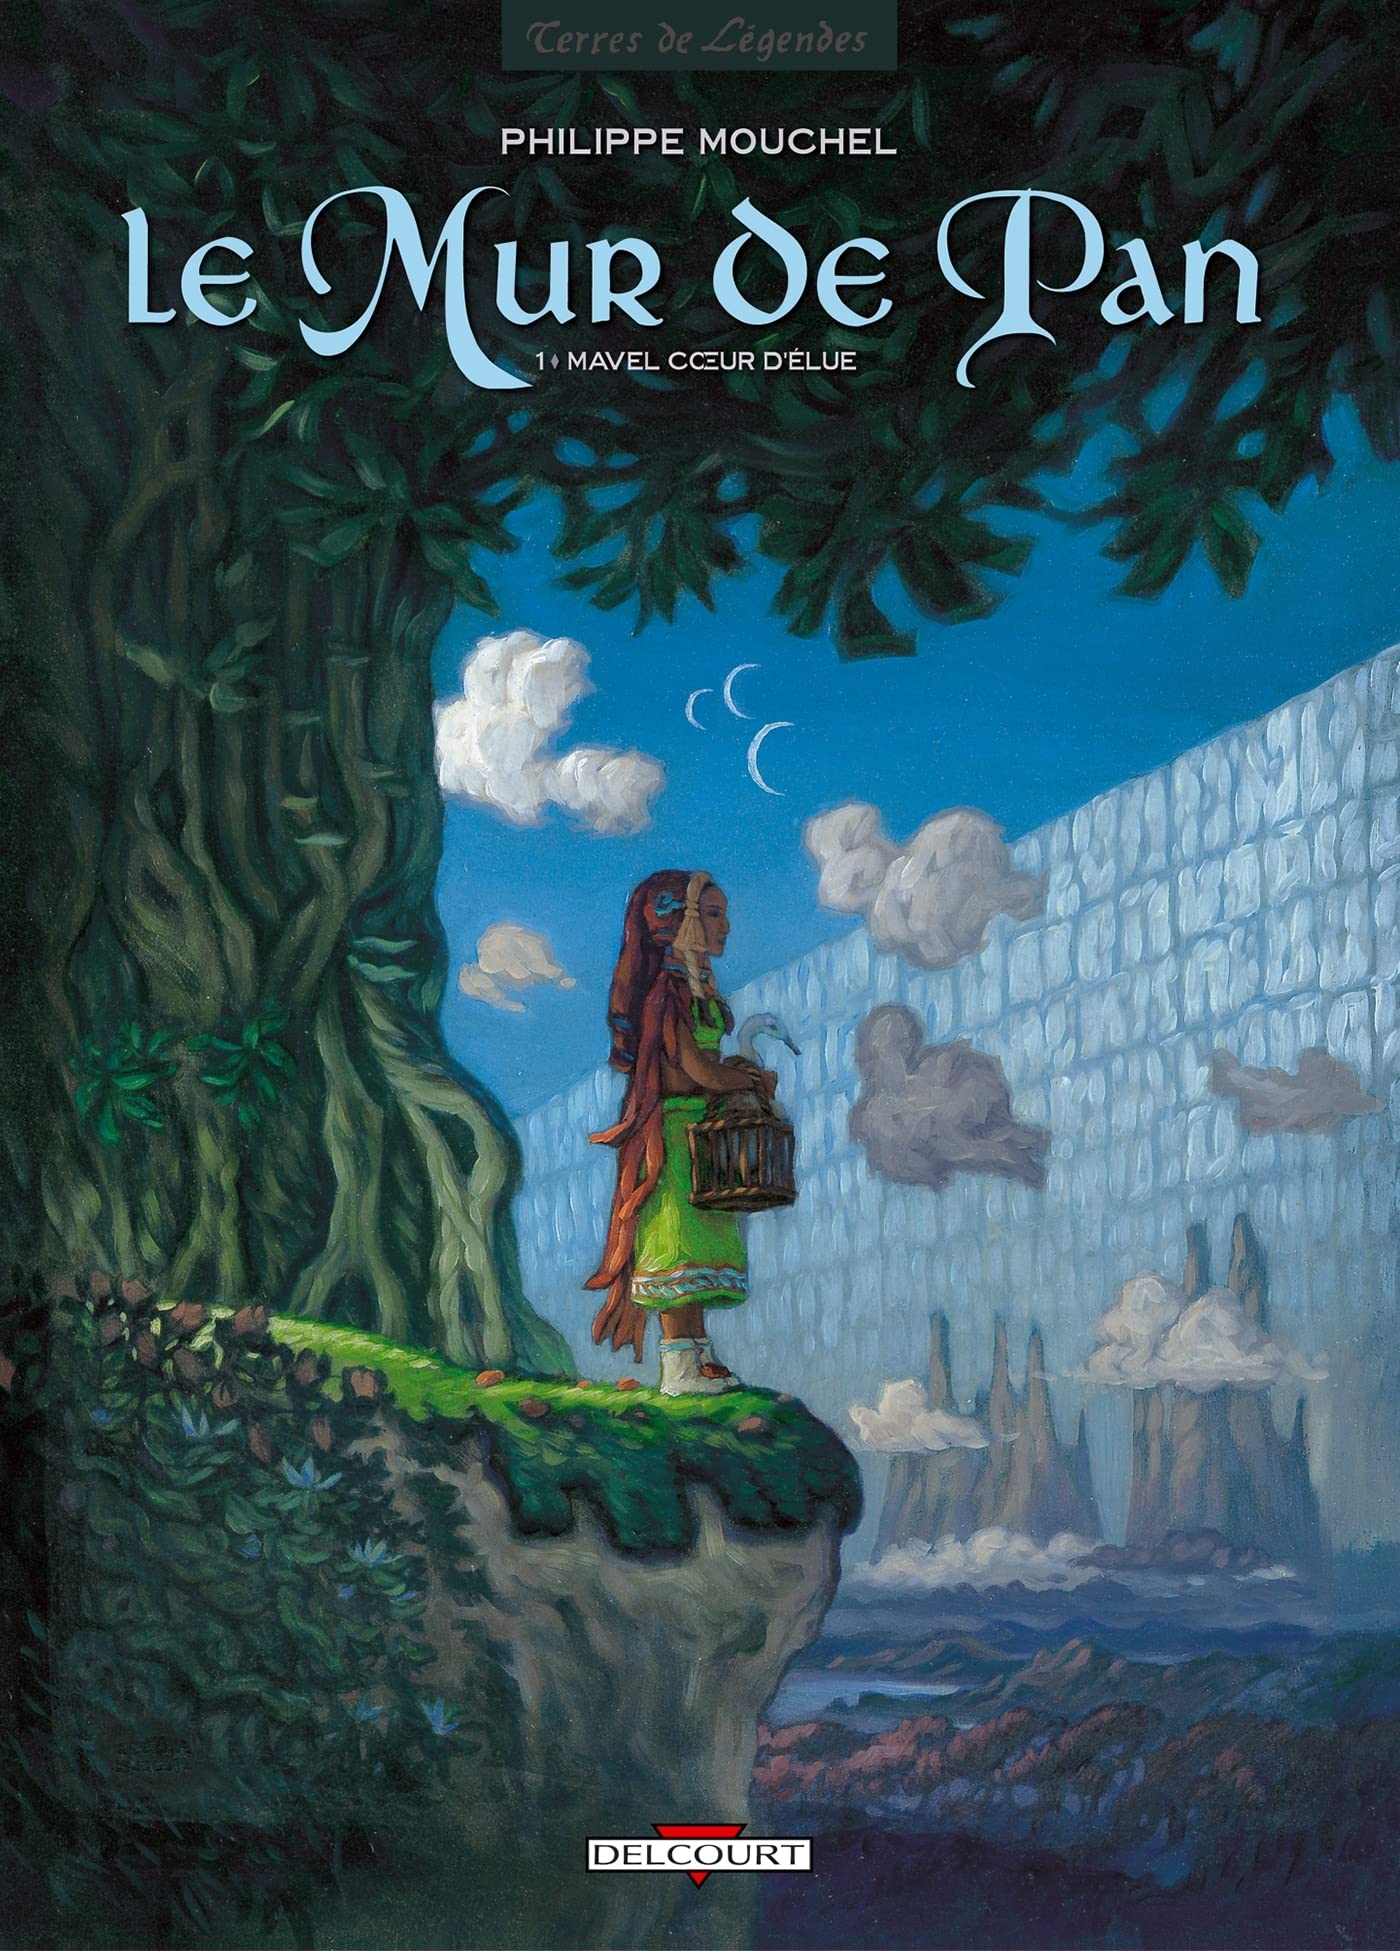 Livre ISBN 2840550547 Le mur de Pan # 1 : Mavel cœur d'élue (Philippe Mouchel)